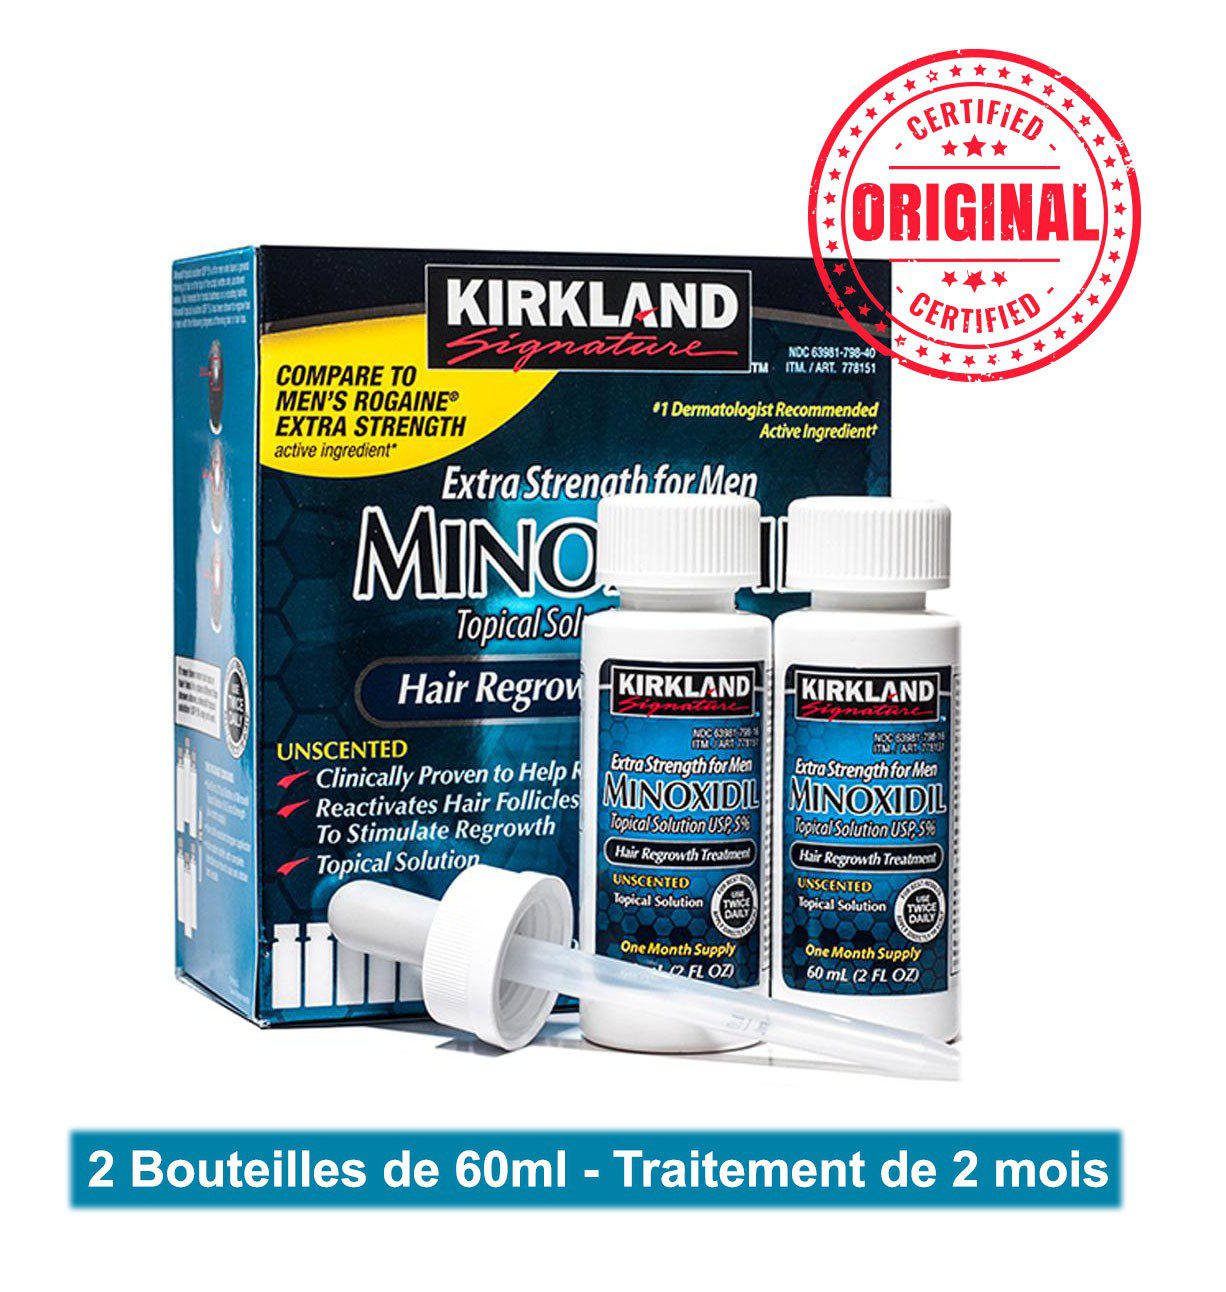 L’original MINOXIDIL 5% Kirkland Signature - 2 Bouteilles de 60ml - Traitement de 2 mois